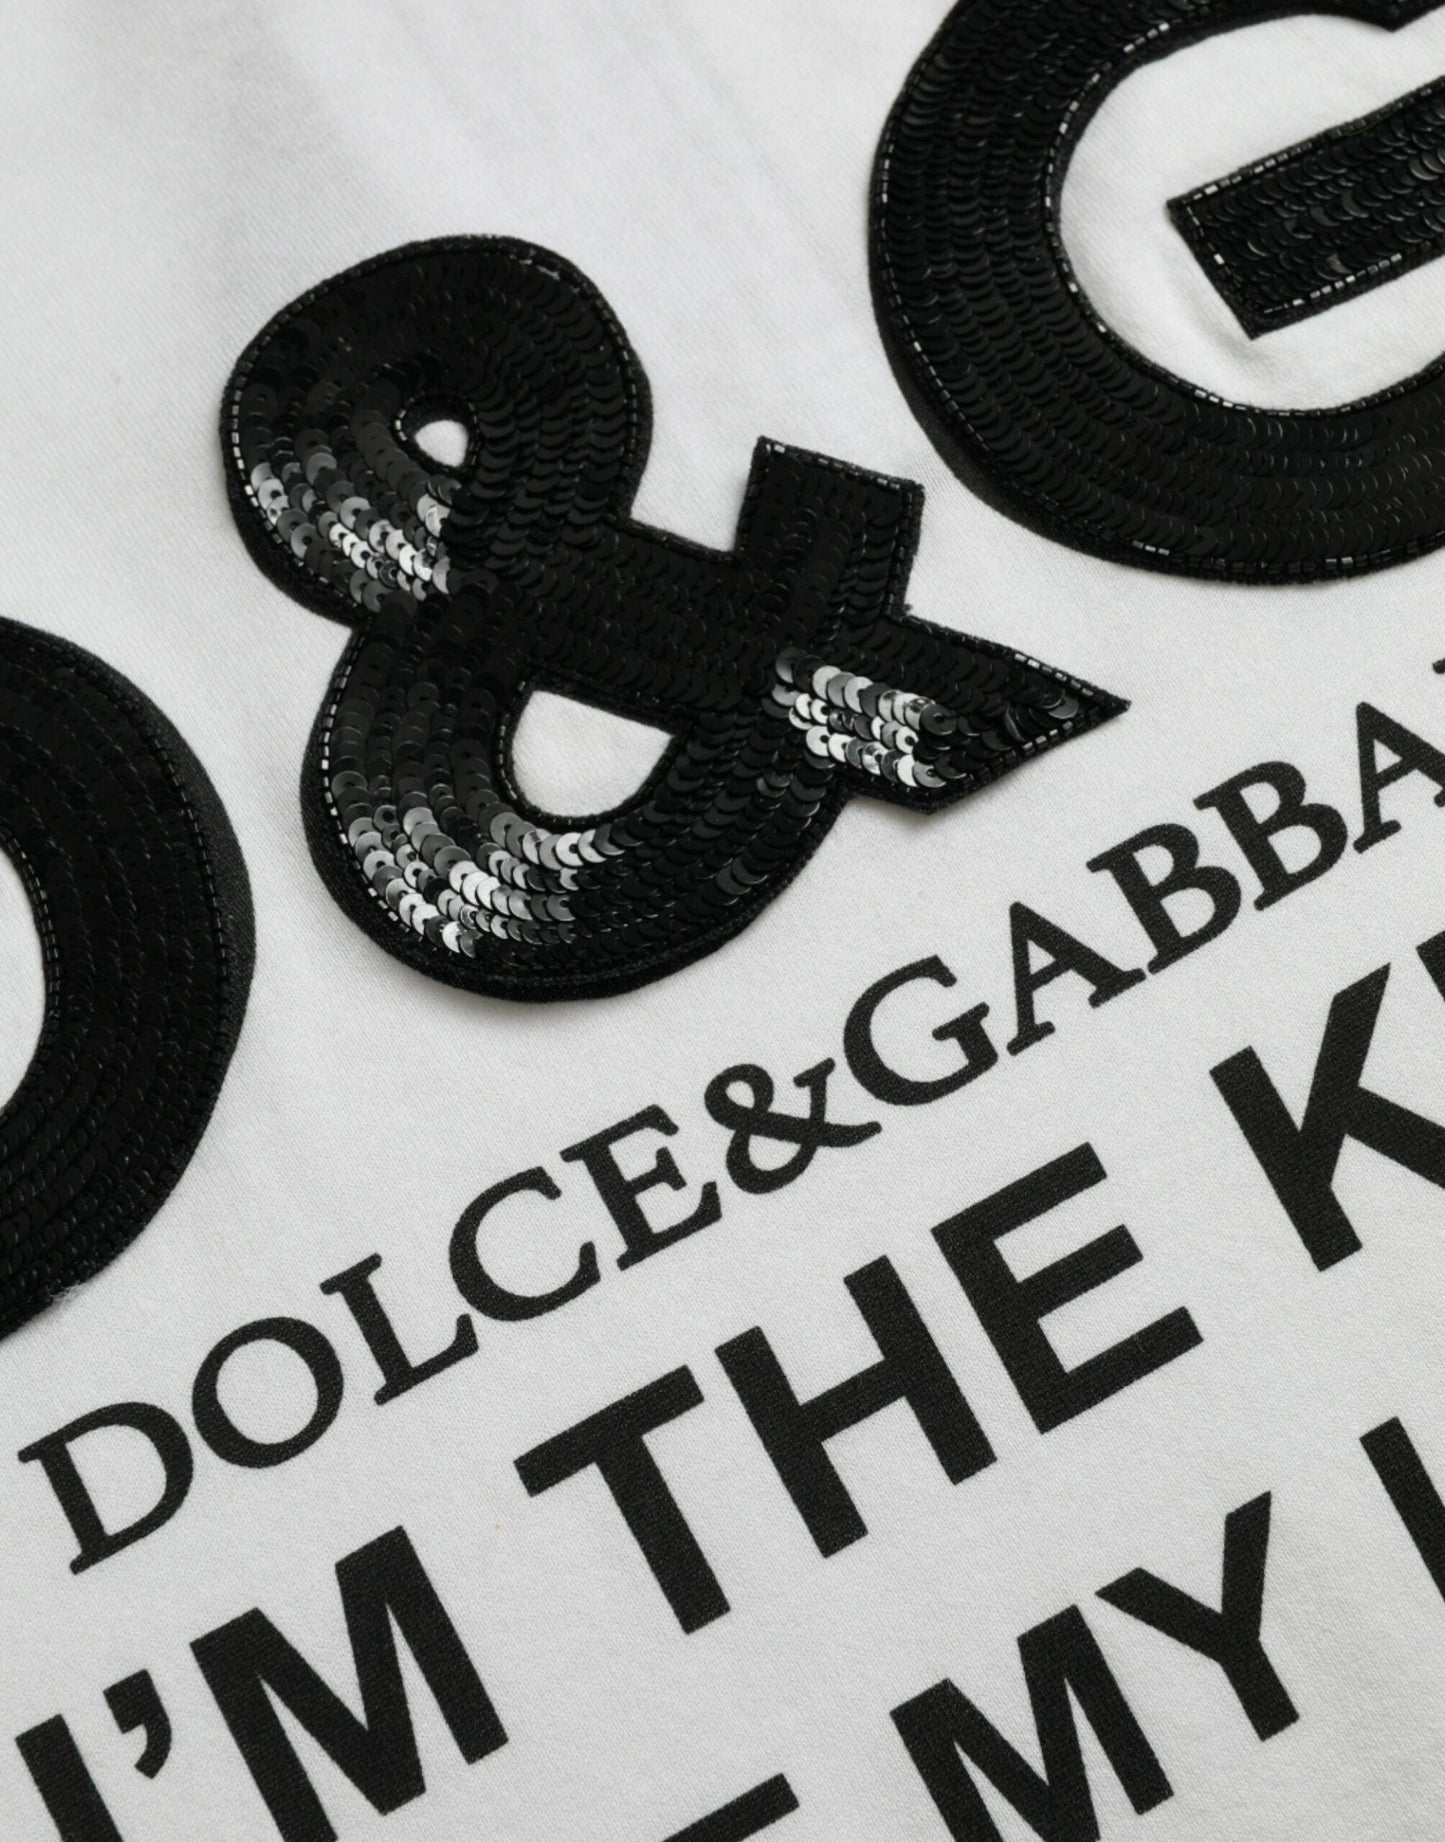 Dolce & Gabbana White D&G King Print Cotton Crewneck T-shirt - PER.FASHION